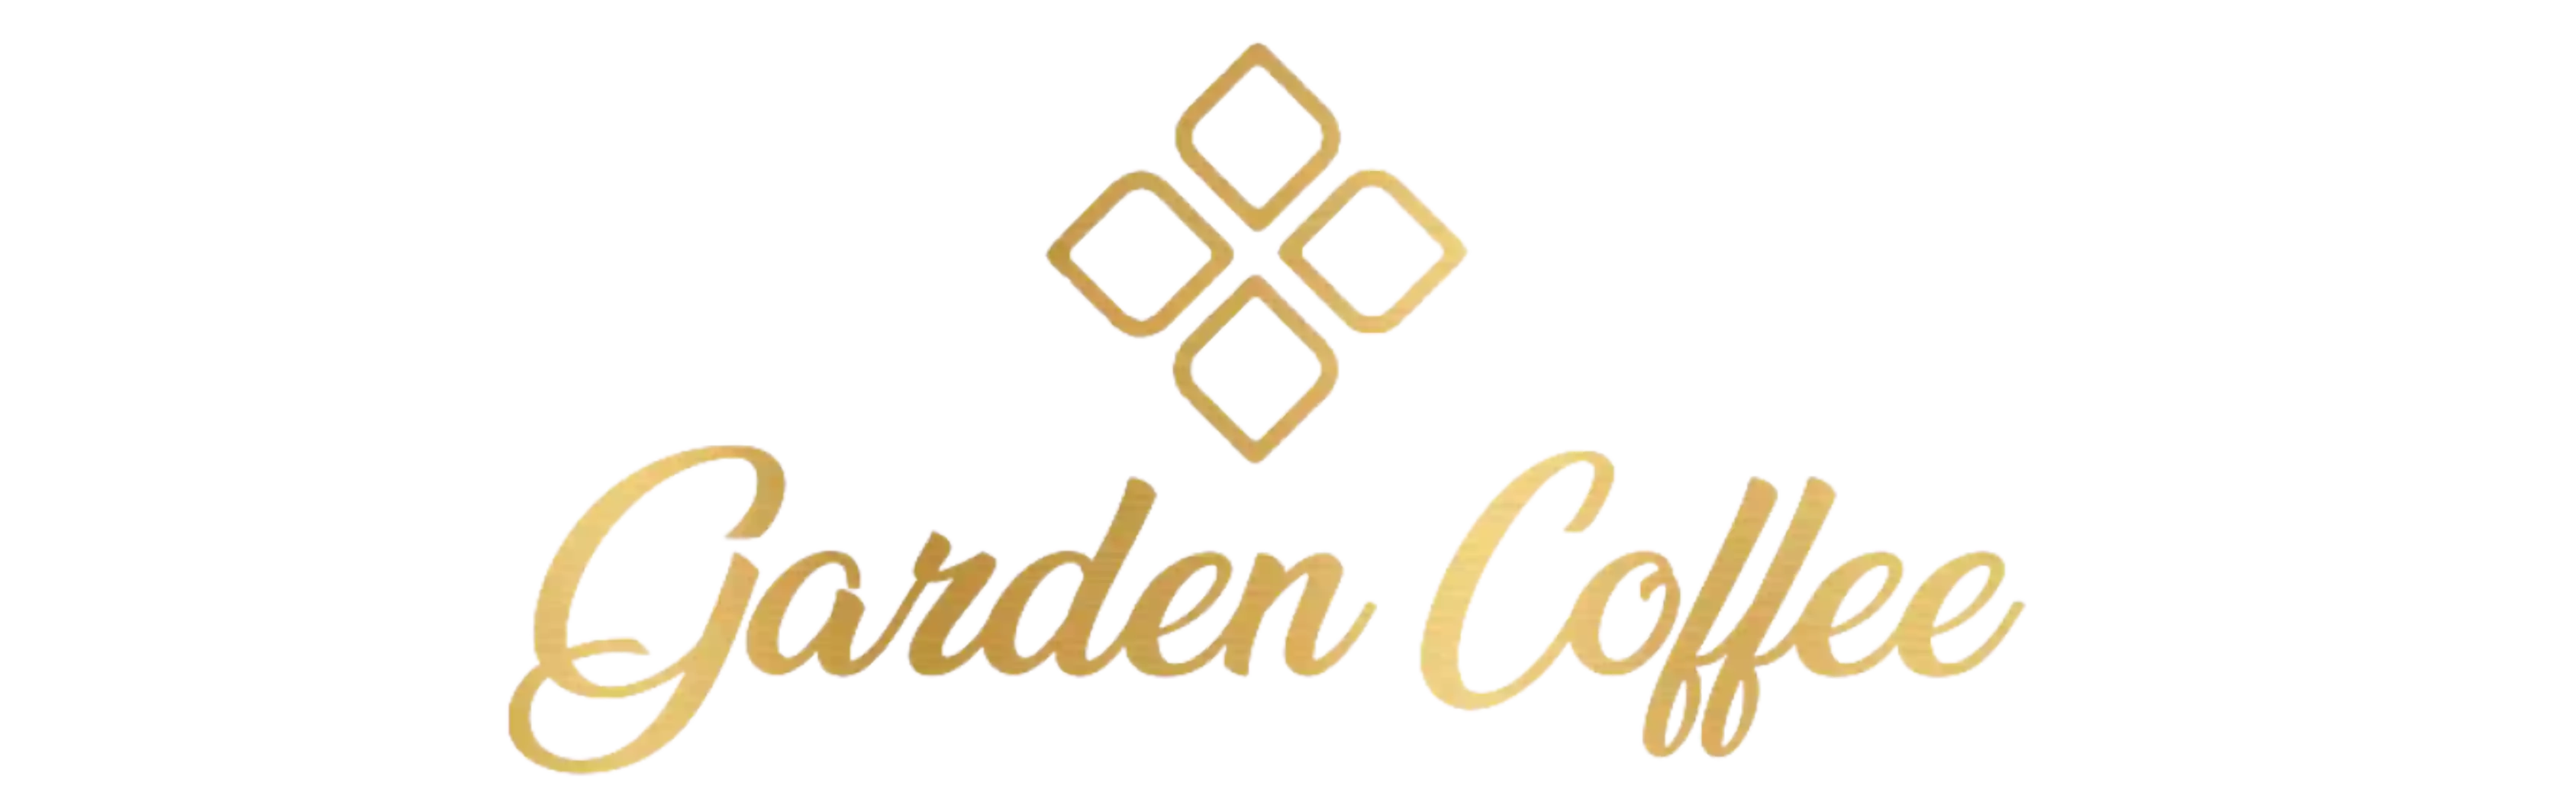 Restaurant Garden Coffee